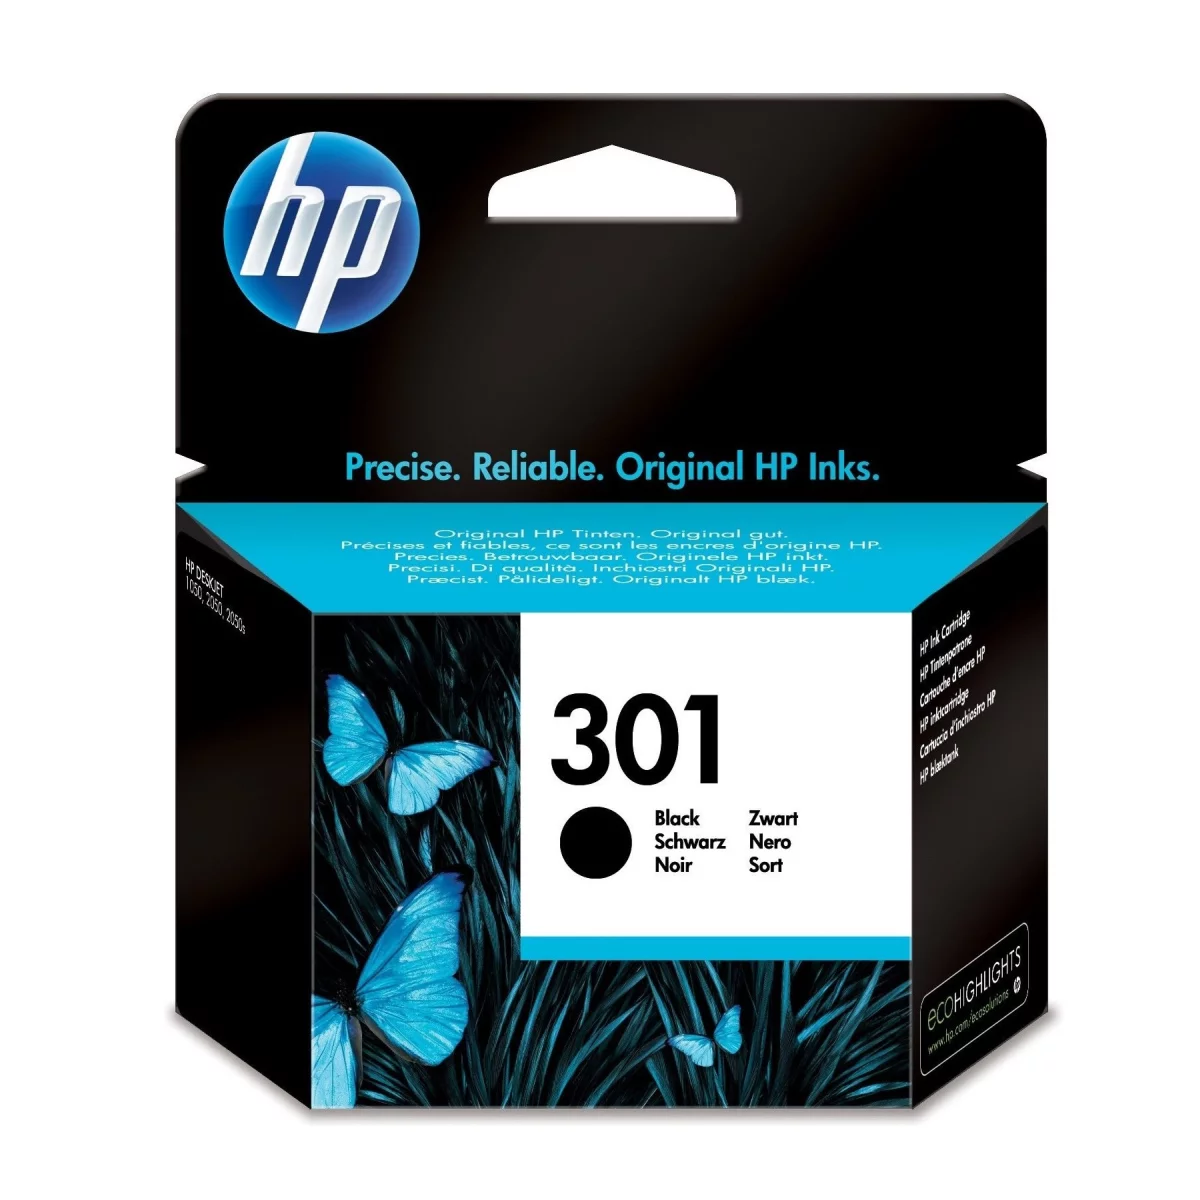 HP Druckerpatrone '301' schwarz 3 ml